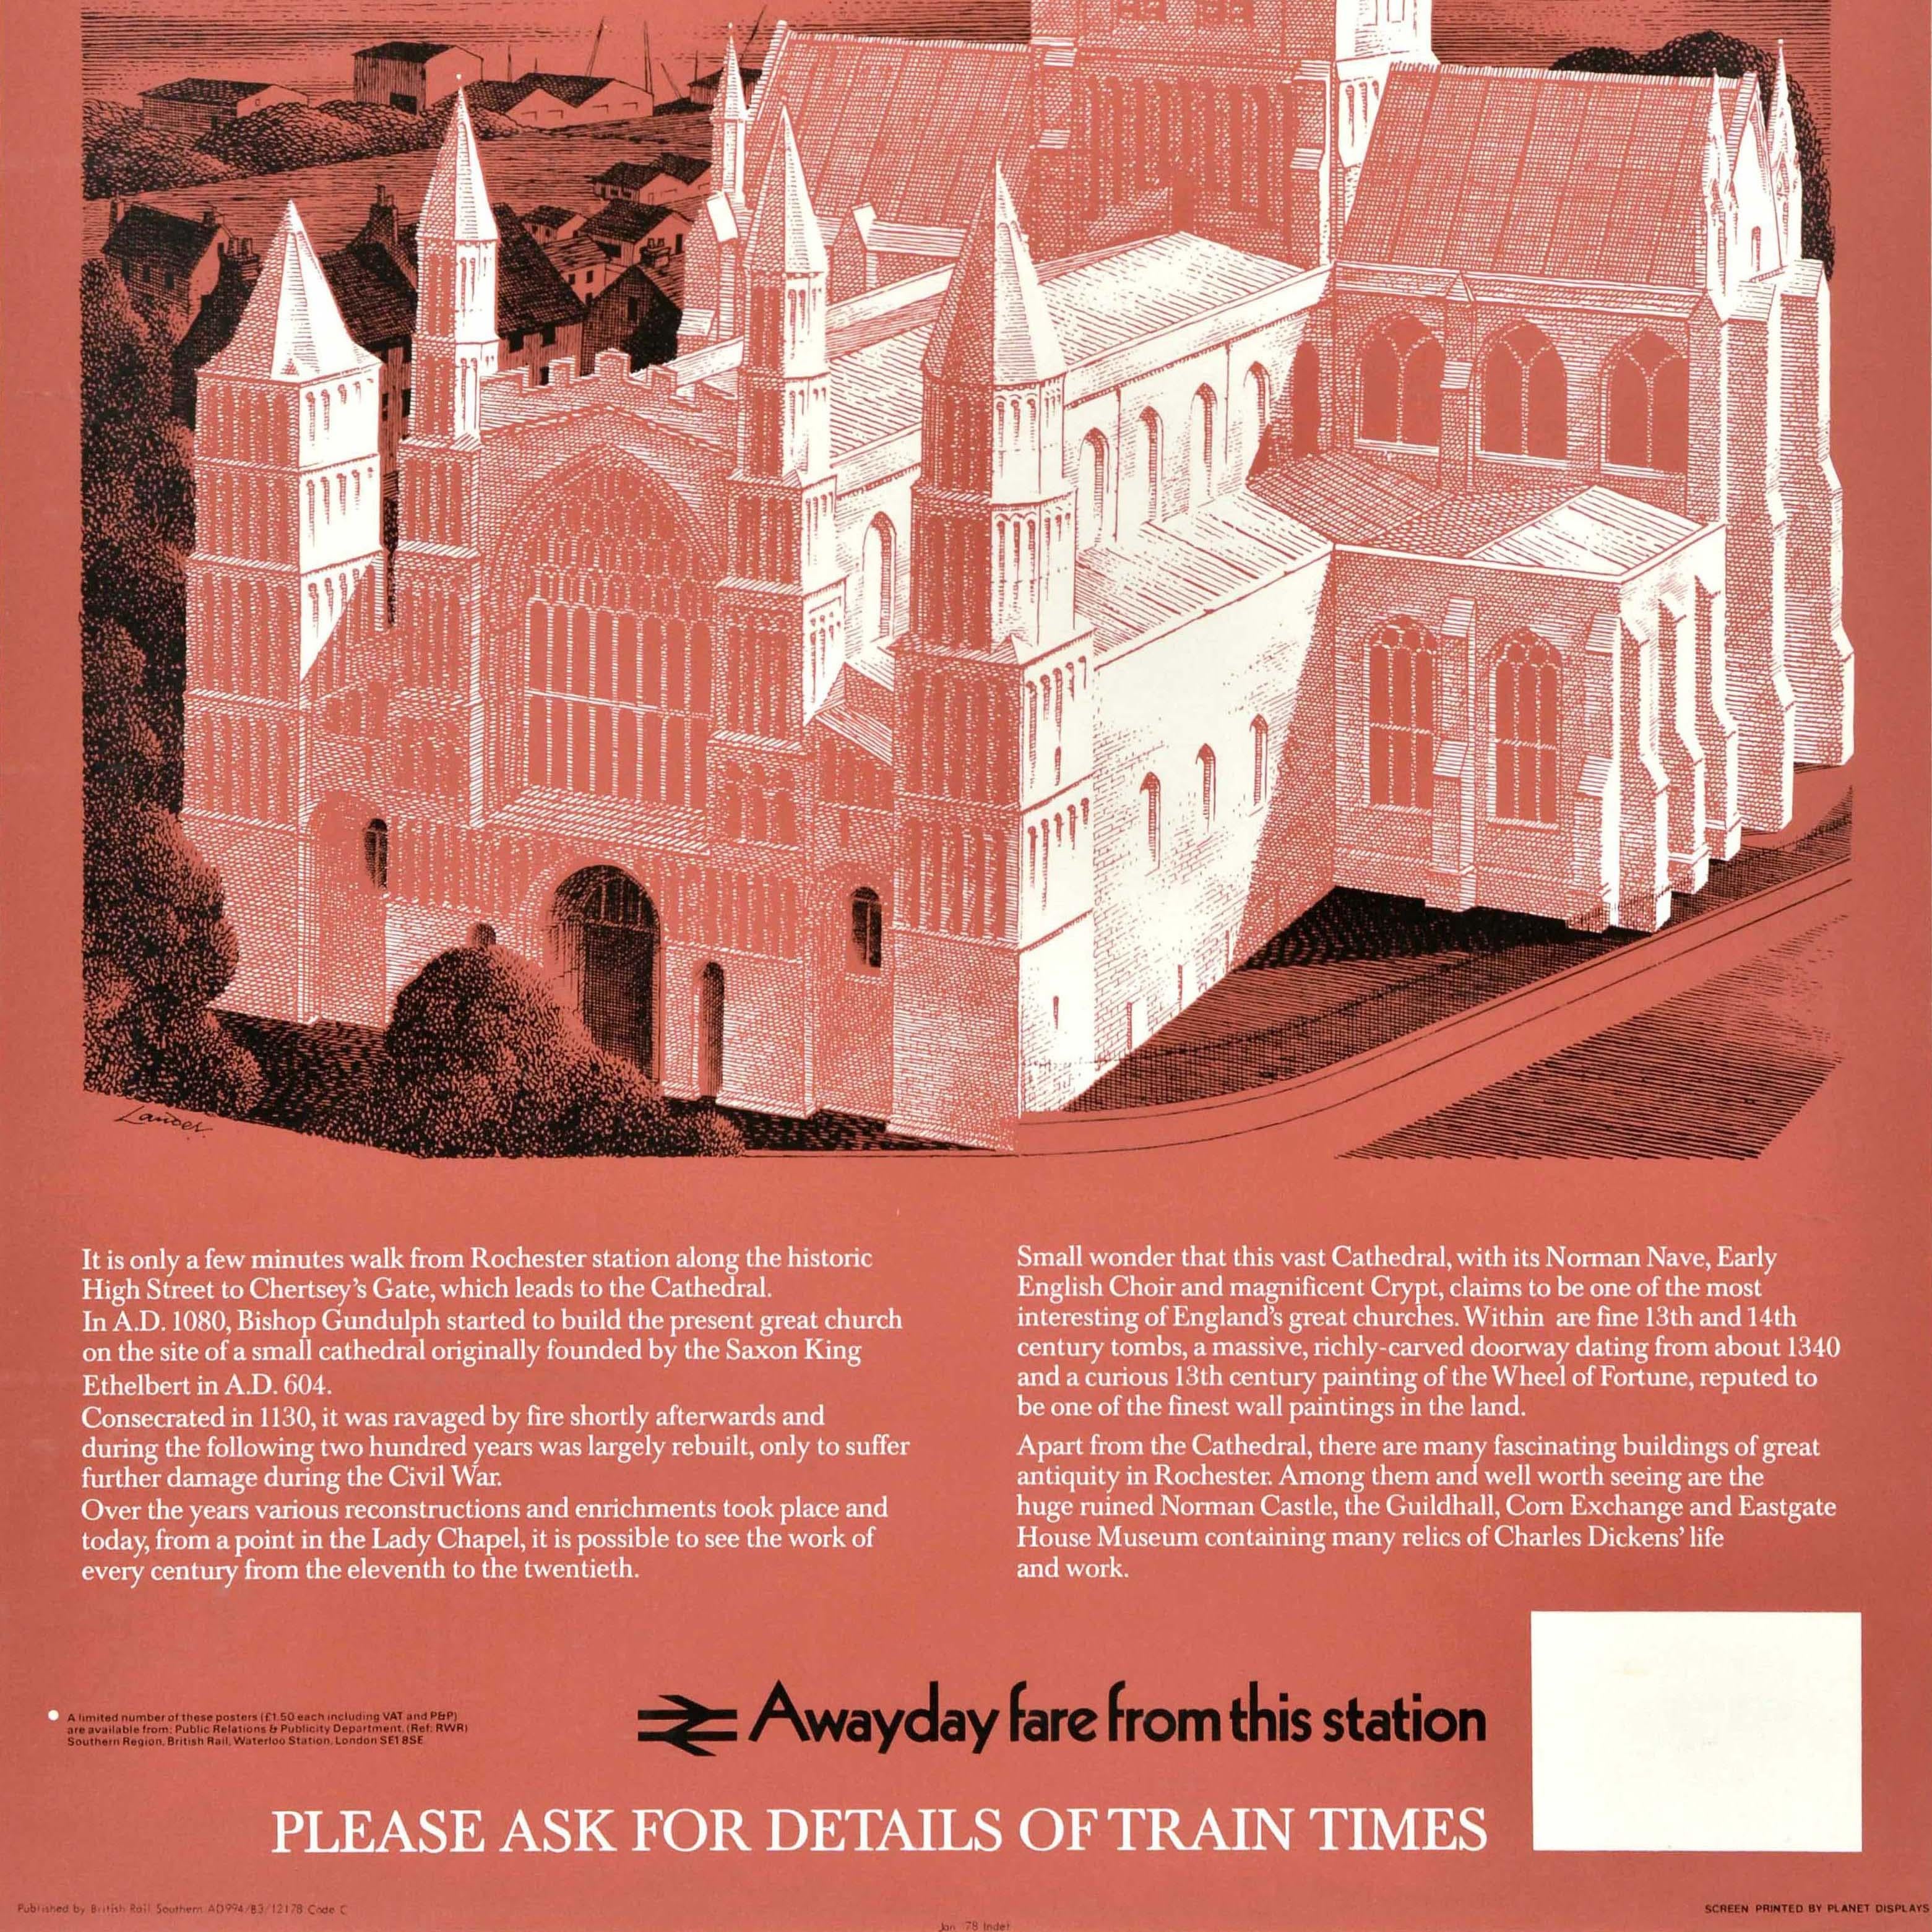 Affiche originale de voyage en train - Visit Rochester - réalisée par le célèbre artiste commercial et créateur d'affiches Reginald Montague Lander (1913-1980) représentant la cathédrale historique de Rochester en blanc avec les arbres environnants,